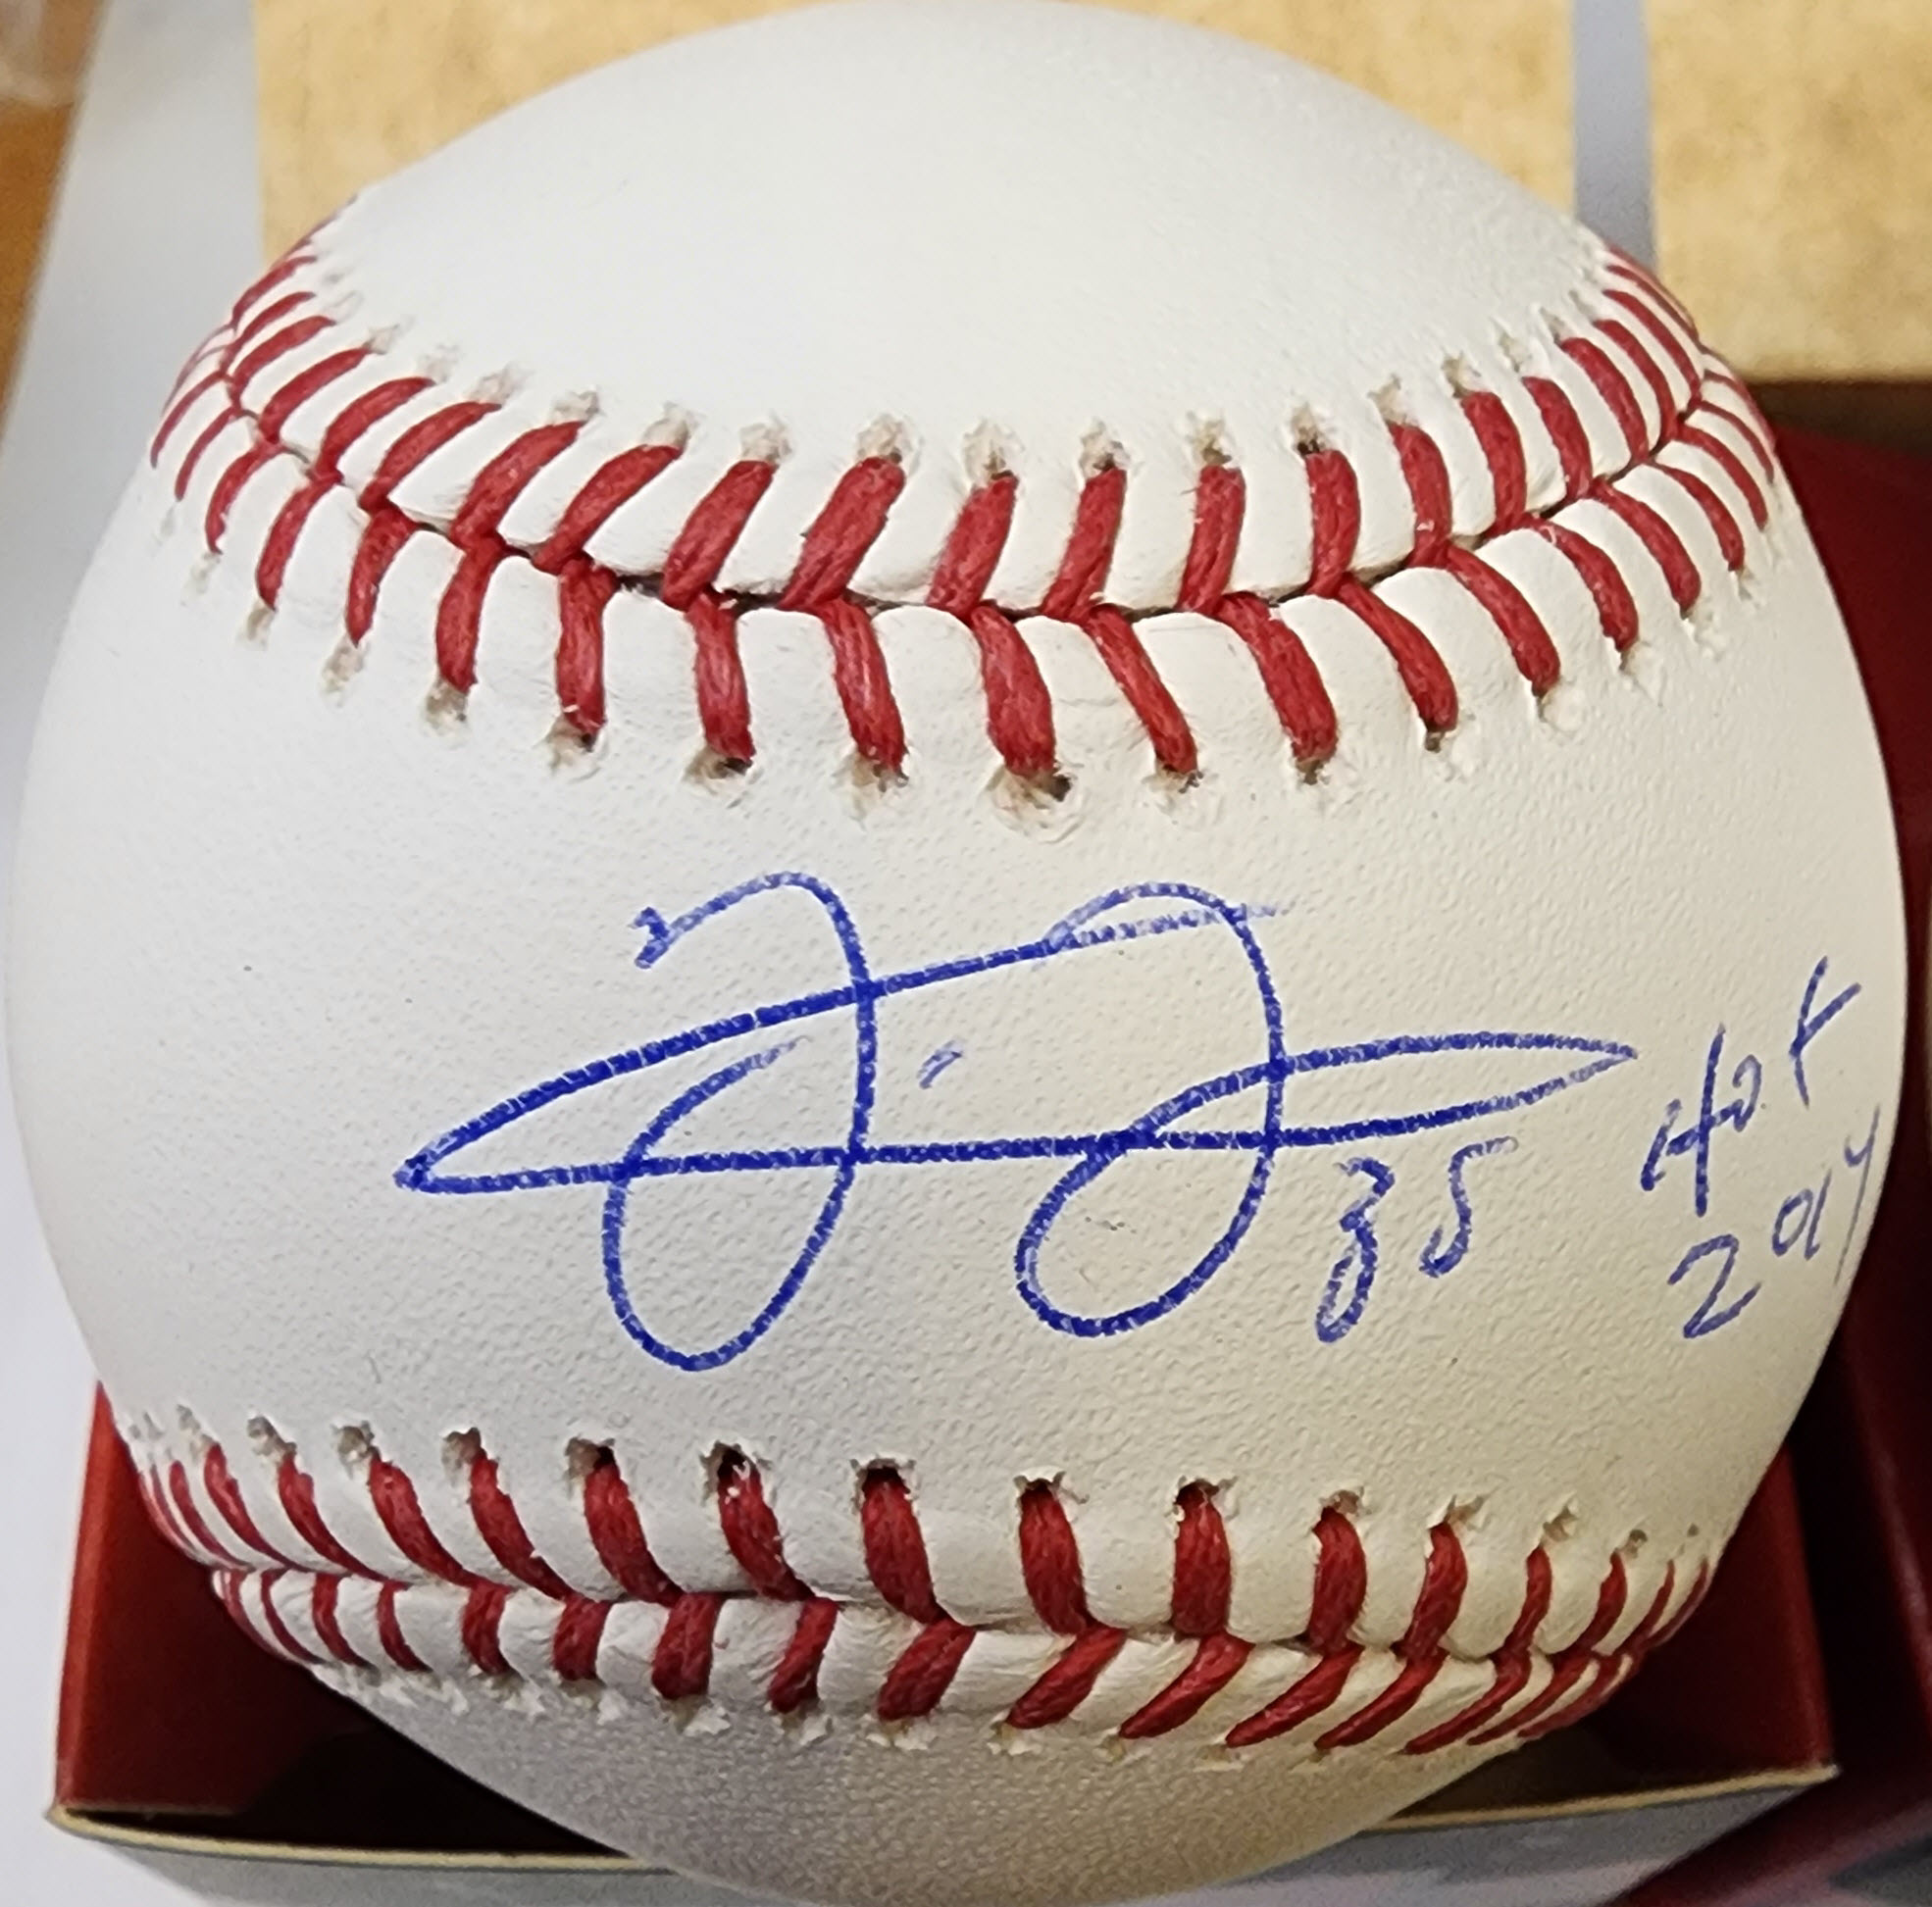 Frank Thomas Autographed Official Major League Baseball HOF 2014 JSA 1